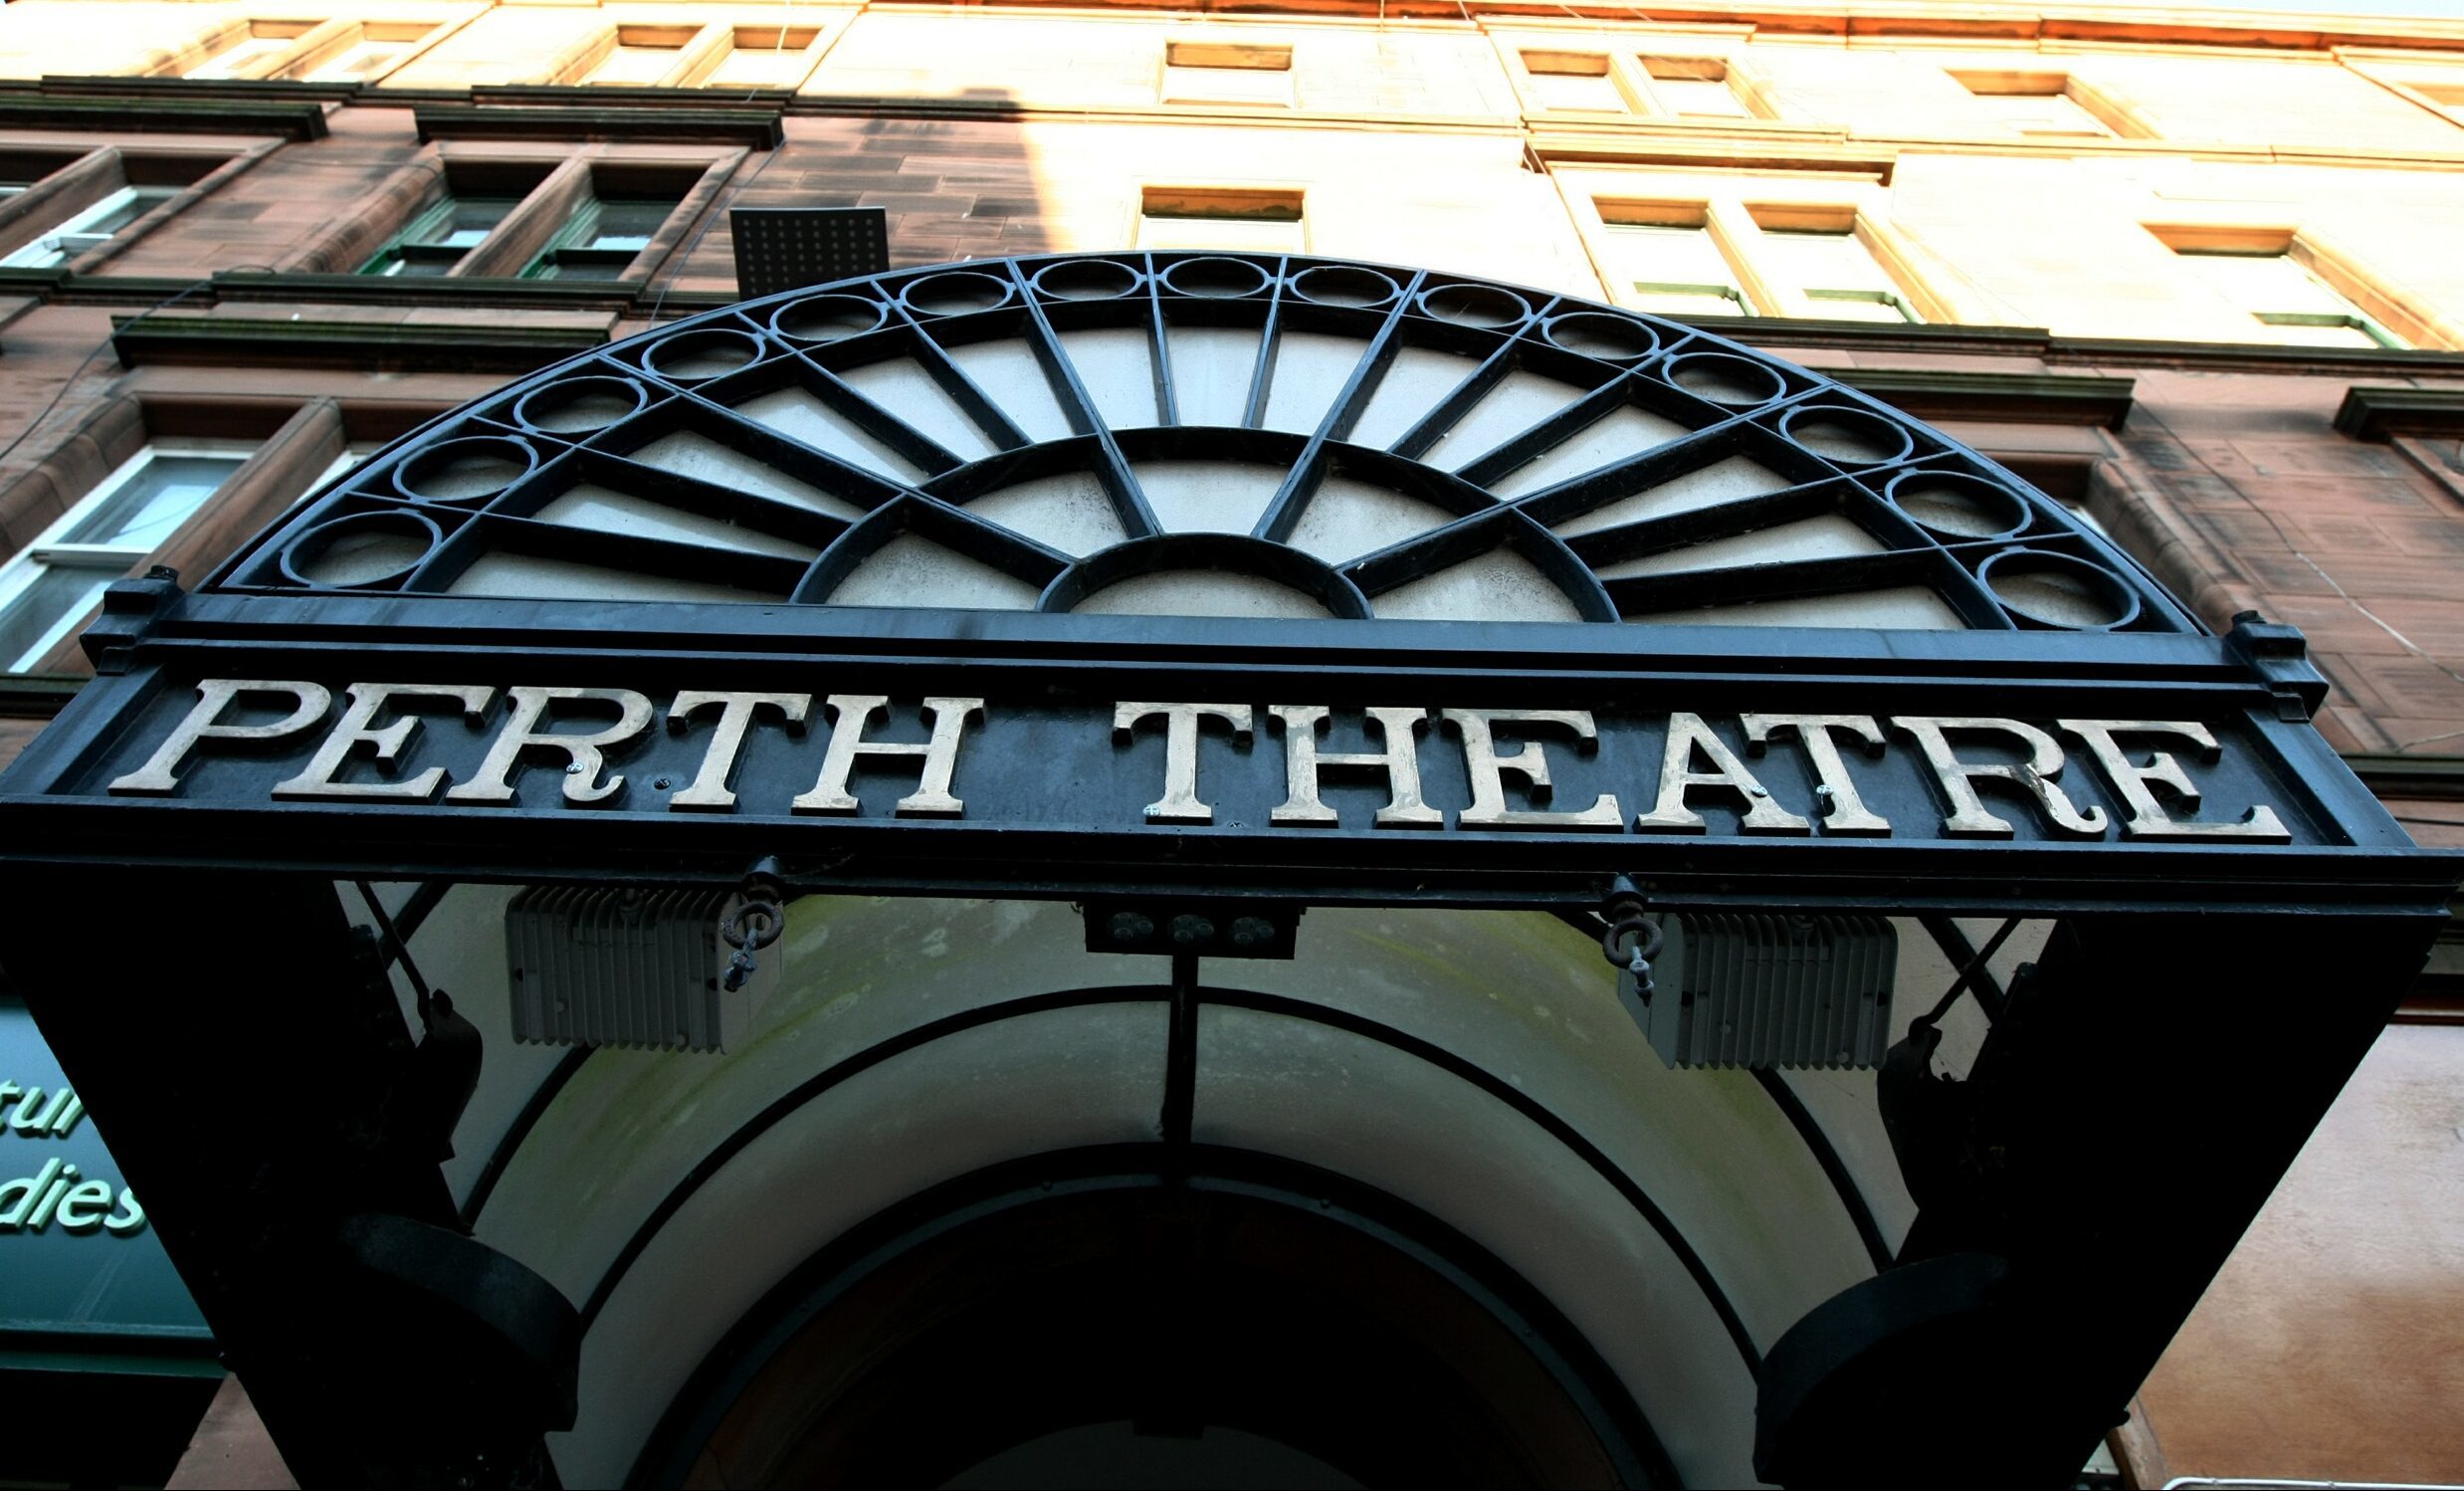 Perth Theatre.